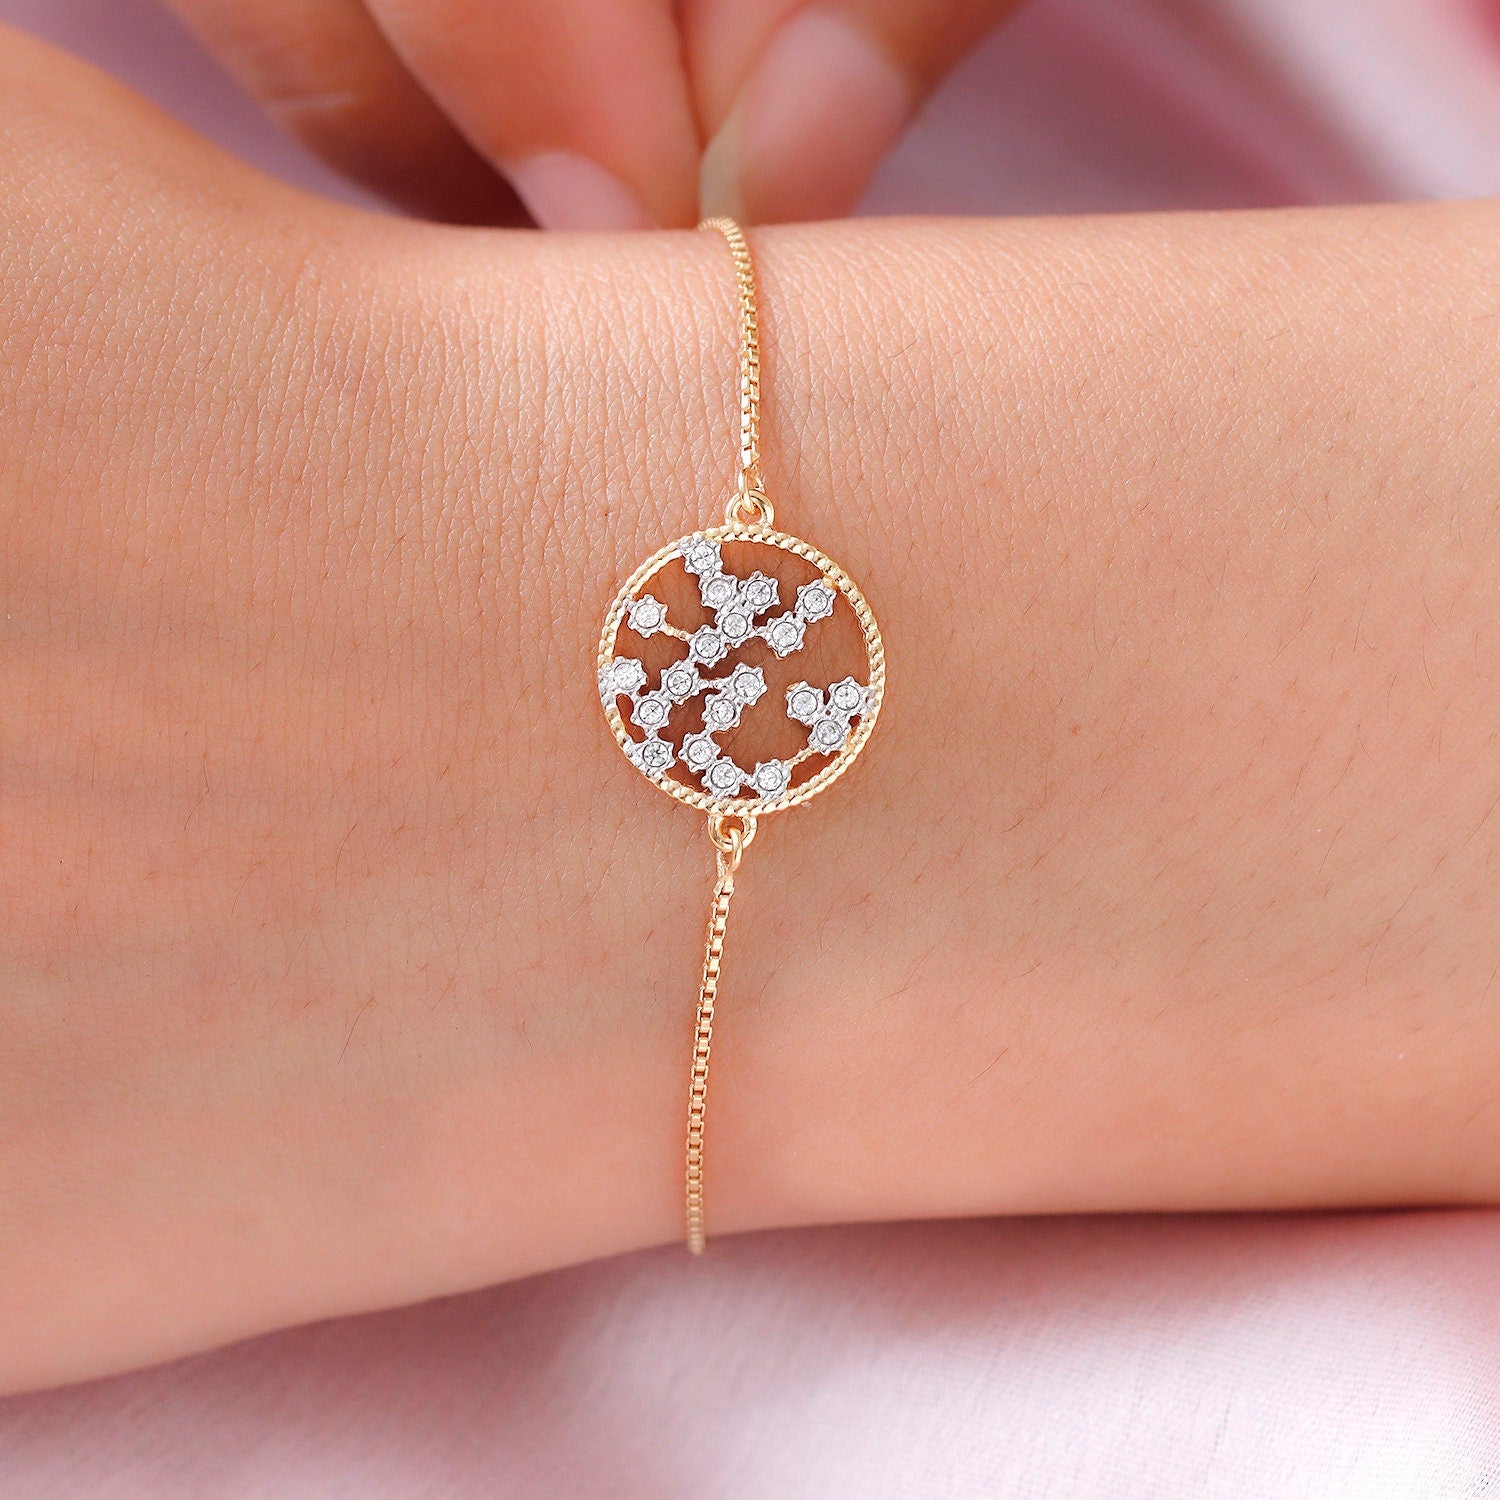 Genuine Sagittarius Constellation 925 Silver Bracelet | Star Sign Bracelet | Astrology bracelet | Zodiac Bracelet for Women | Gift for her